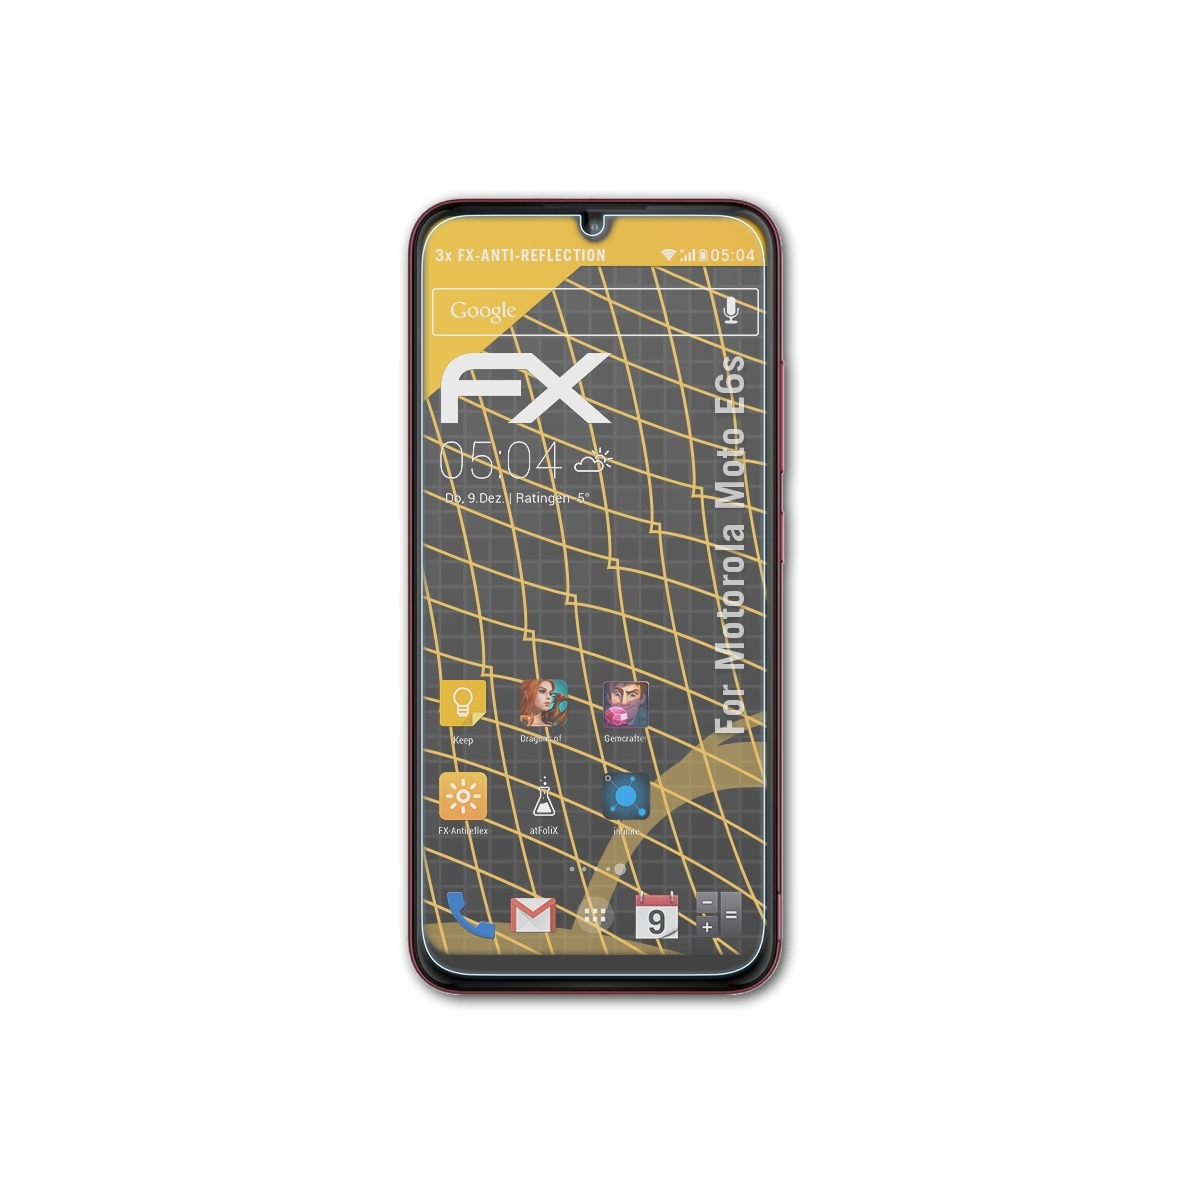 3x FX-Antireflex Displayschutz(für Motorola E6s) ATFOLIX Moto